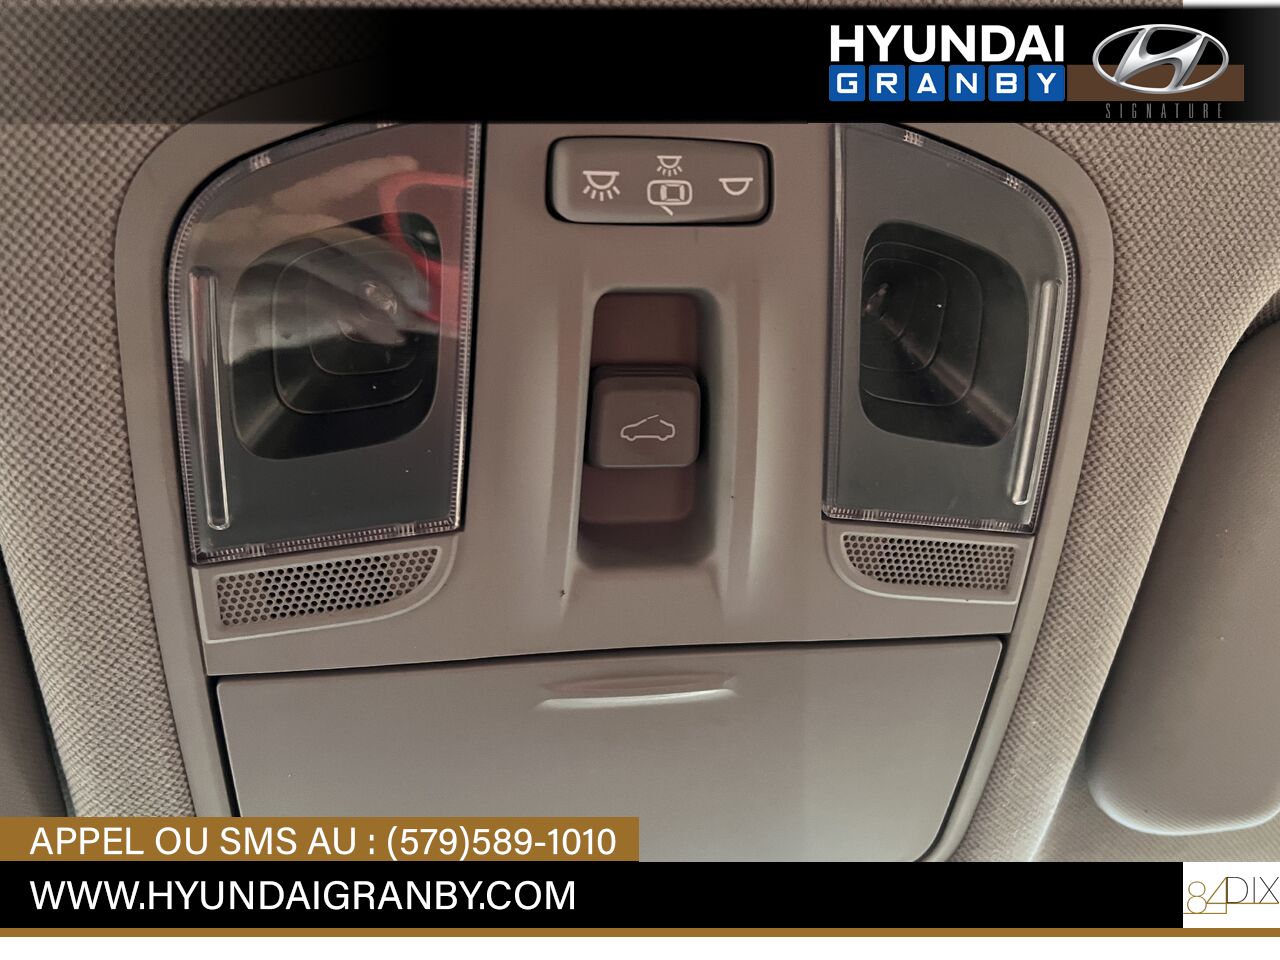 2017 Hyundai Ioniq hybride Granby - photo #22